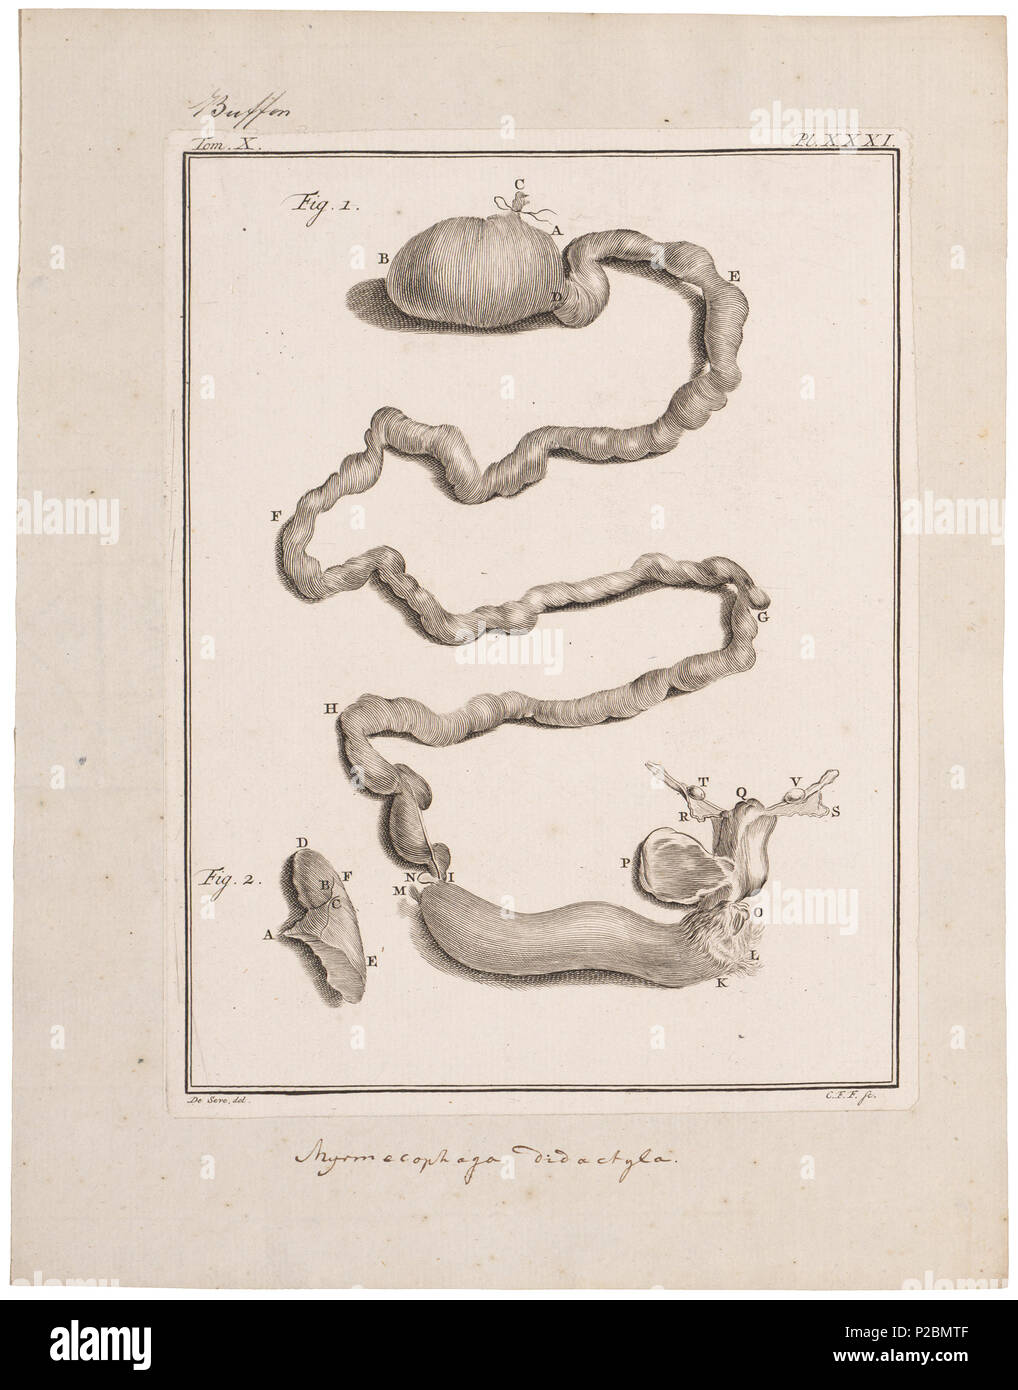 . Myrmecophaga didactyla - ingewanden . between 1700 and 1880 UBA01 IZ21099999, 12-11-09, 15:51,  8C, 3654x2972 (1973+375), 100%%%%, BasisCurve Art, 1/160 s, R40.3, G10.1, B6.5 198 Myrmecophaga didactyla - ingewanden - 1700-1880 - Print - Iconographia Zoologica - Special Collections University of Amsterdam - UBA01 IZ21099999 Stock Photo